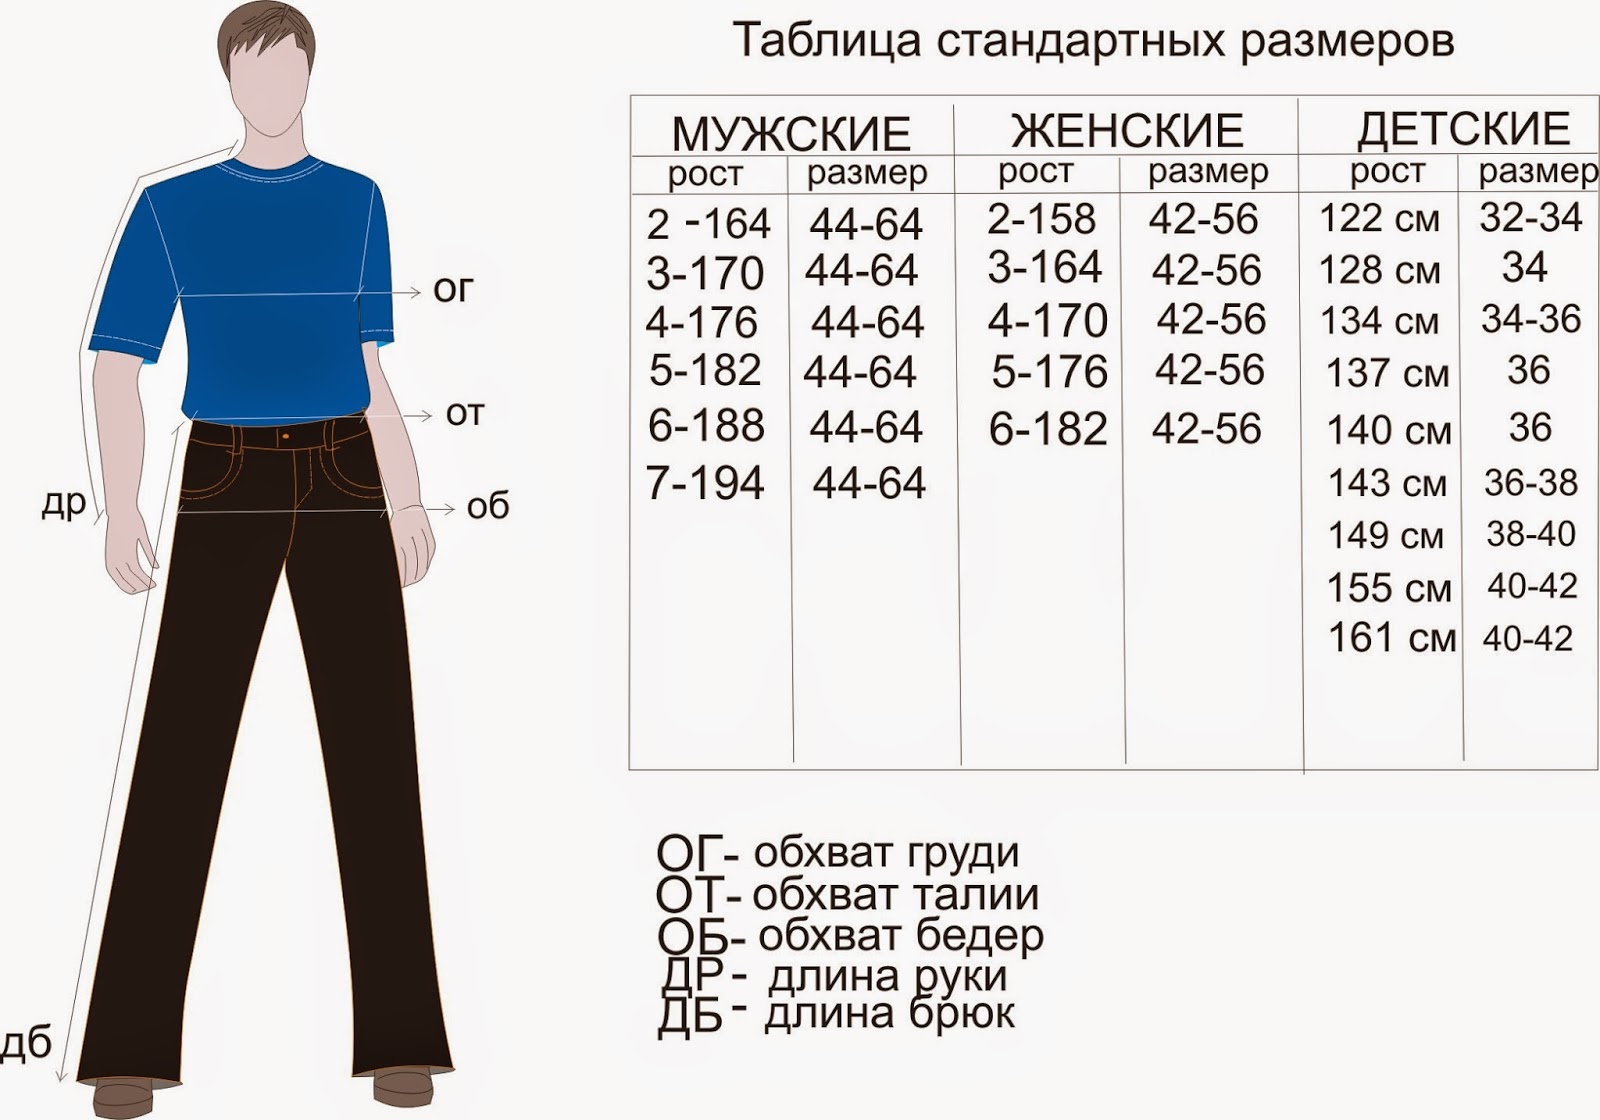 Рост 6 мужчина. Размеры штанов мужских таблица на рост 176. Размер штанов на рост 170 мужские. Размеры штанов мужских таблица рост 182. Мужские брюки таблица размеров и роста.